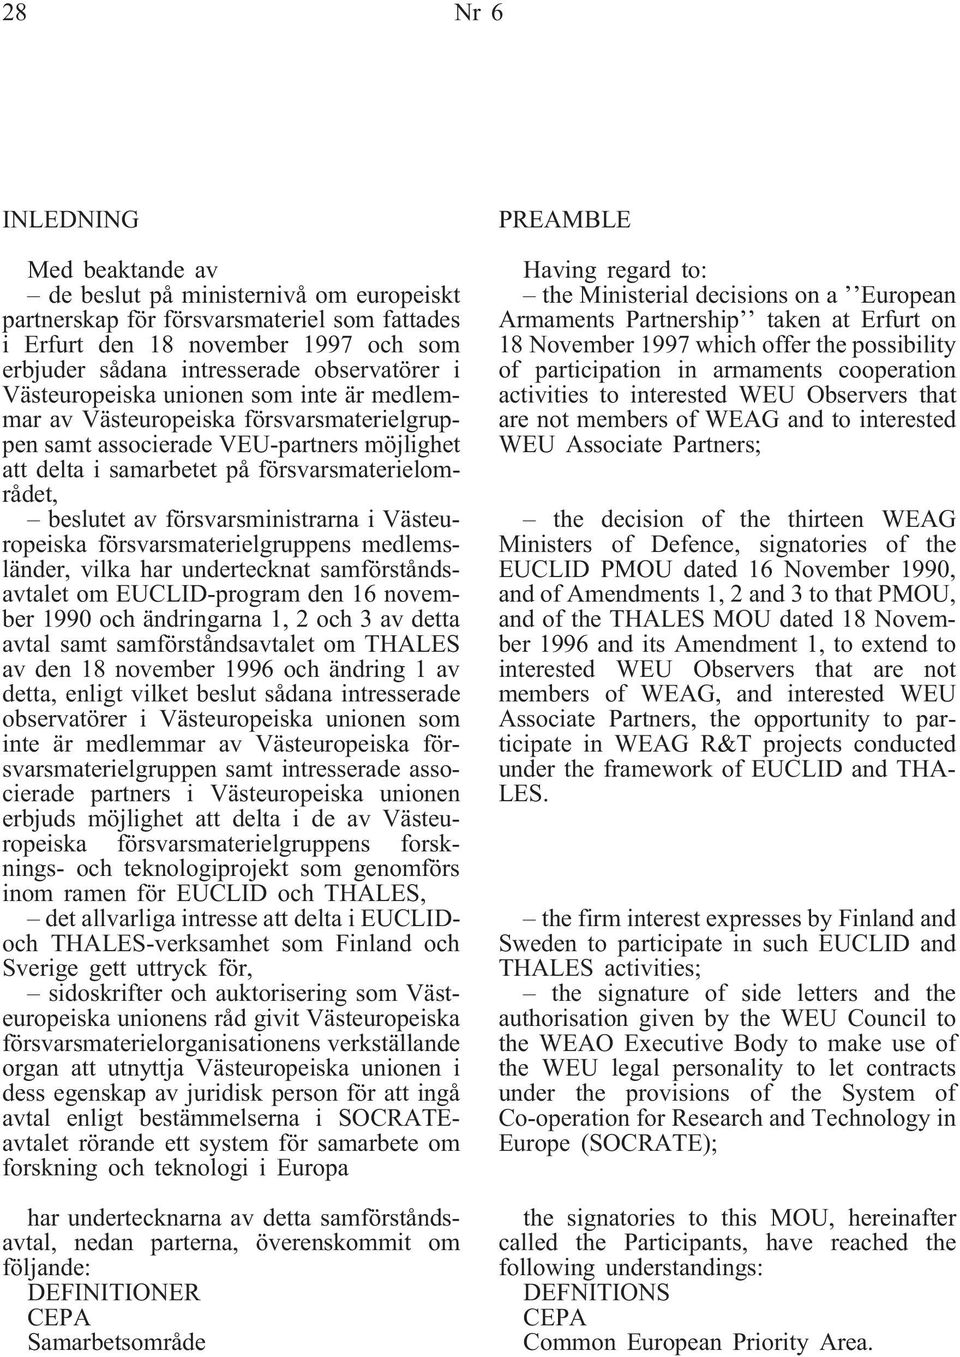 beslutet av försvarsministrarna i Västeuropeiska försvarsmaterielgruppens medlemsländer, vilka har undertecknat samförståndsavtalet om EUCLID-program den 16 november 1990 och ändringarna 1, 2 och 3